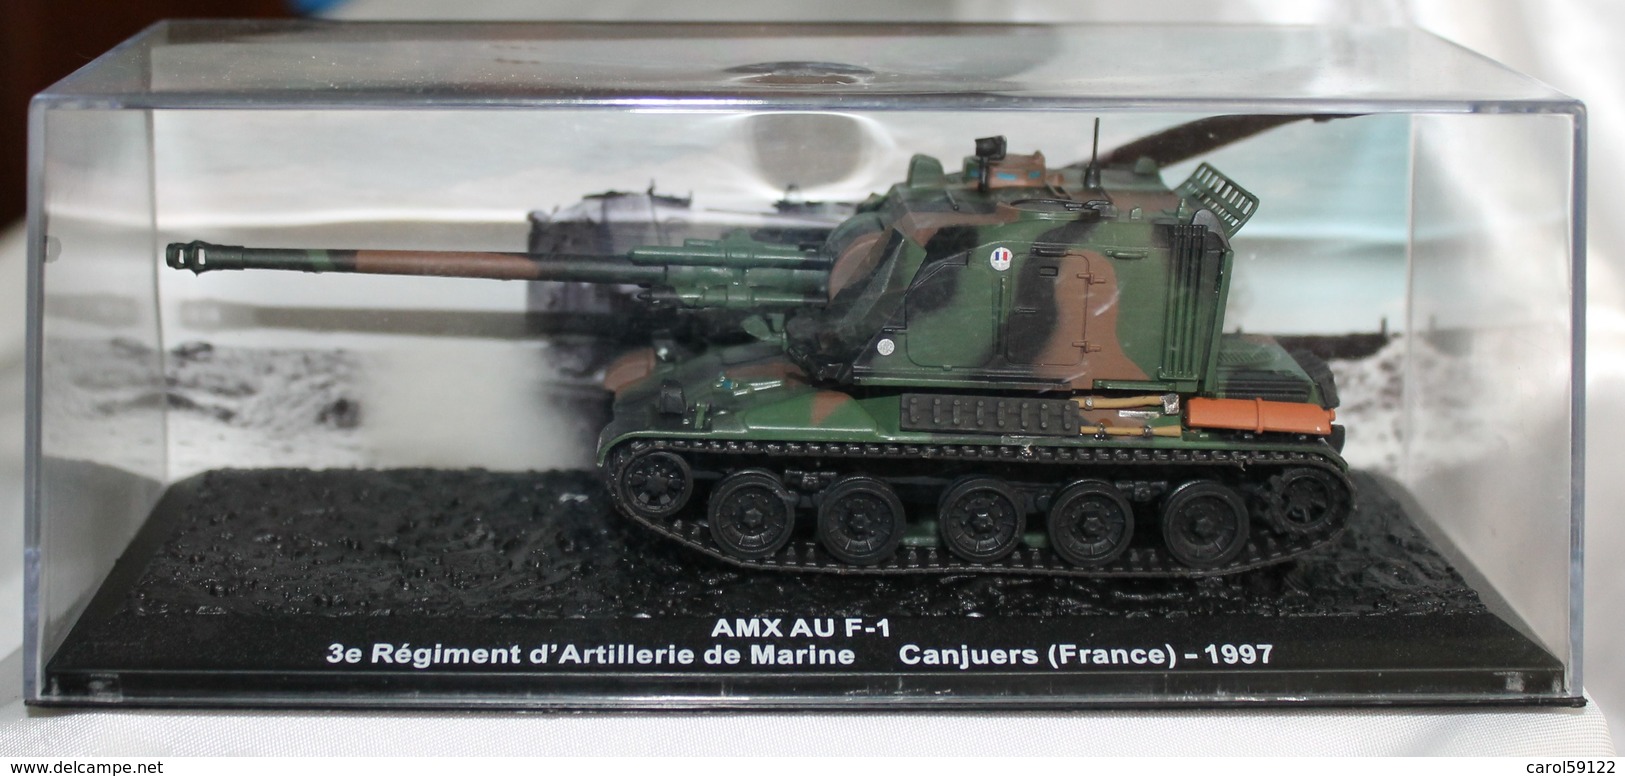 Maquette AMX AU F-1 1997 - Vehículos